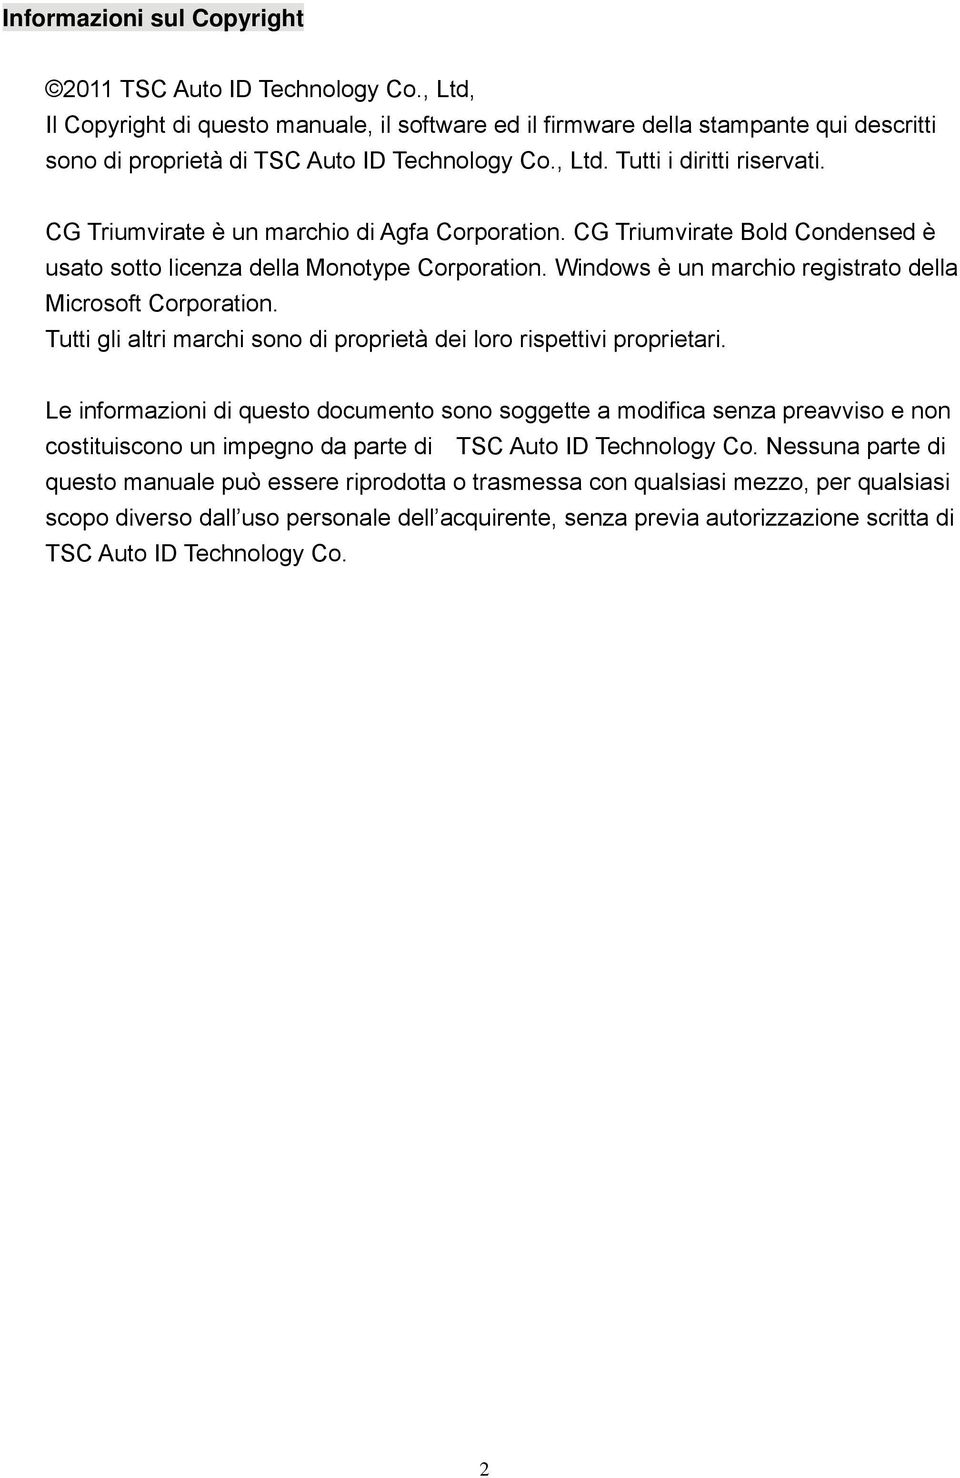 CG Triumvirate è un marchio di Agfa Corporation. CG Triumvirate Bold Condensed è usato sotto licenza della Monotype Corporation. Windows è un marchio registrato della Microsoft Corporation.